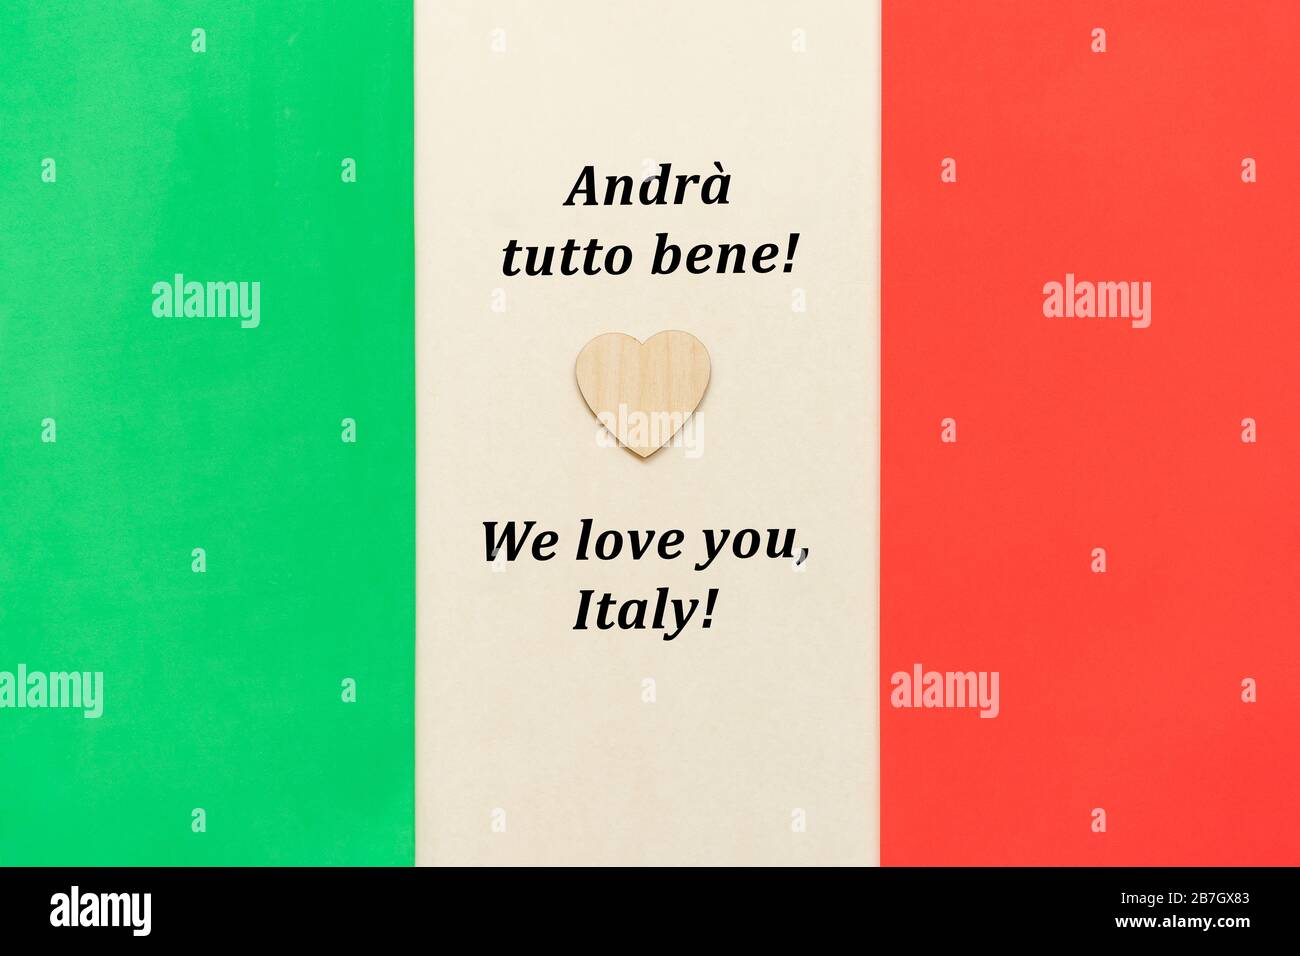 Mots de soutien et de solidarité avec le peuple italien dans le cadre du drapeau national italien. Banque D'Images